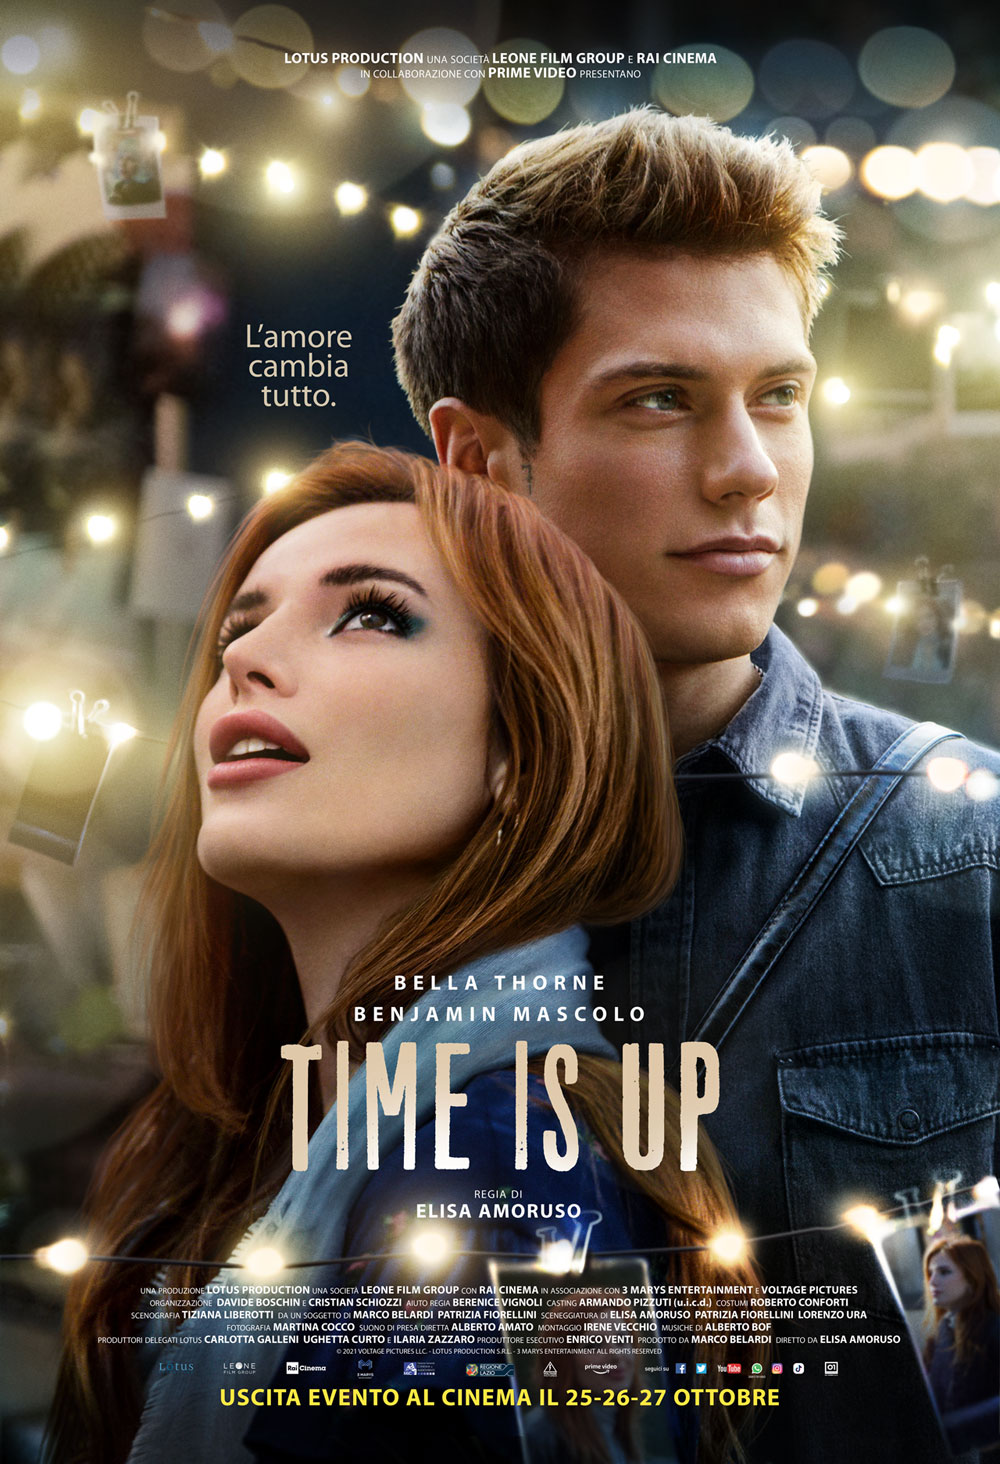  Dall'articolo: Time Is Up, il poster ufficiale del film.